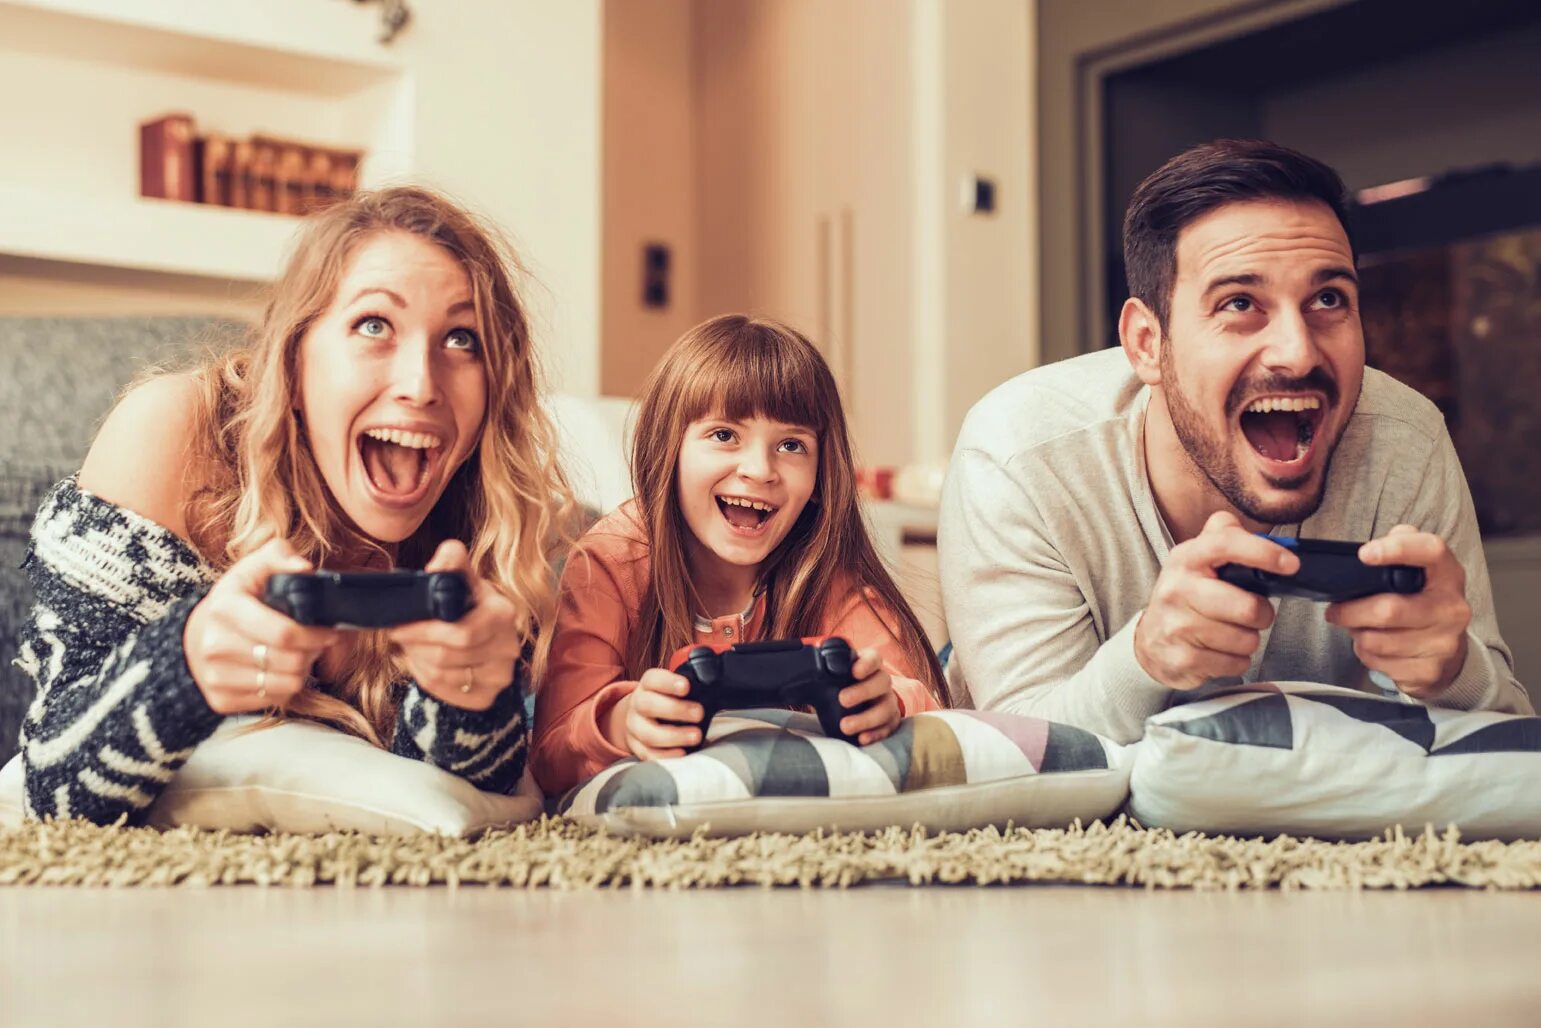 They play games now. Хобби семьи. Счастливая семья в доме. Дети играющие в Видеоигры. Дети играющие в приставку.